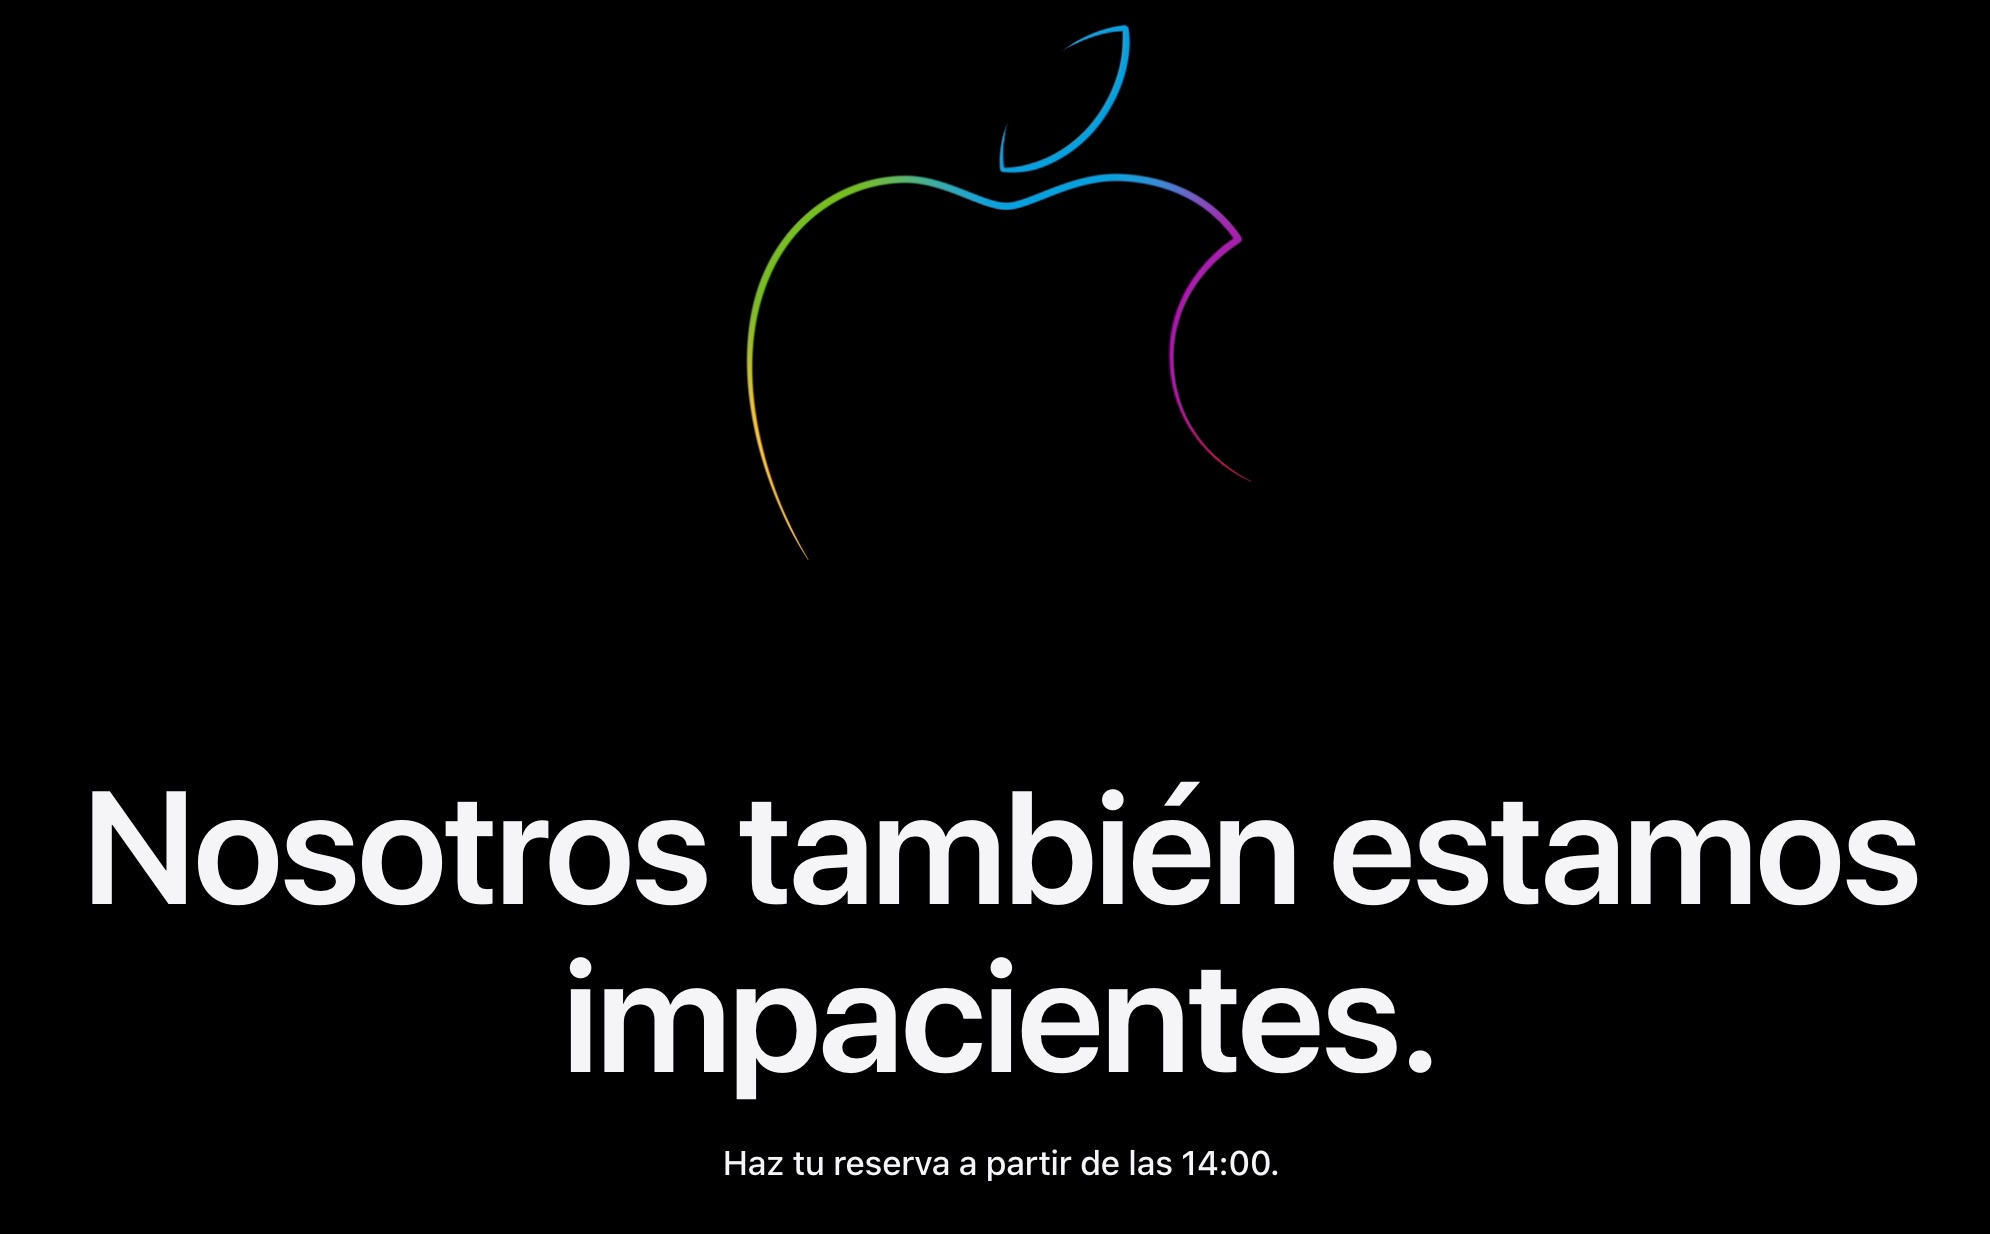 Apple Store cerrada temporalmente: Nosotros también estamos impacientes